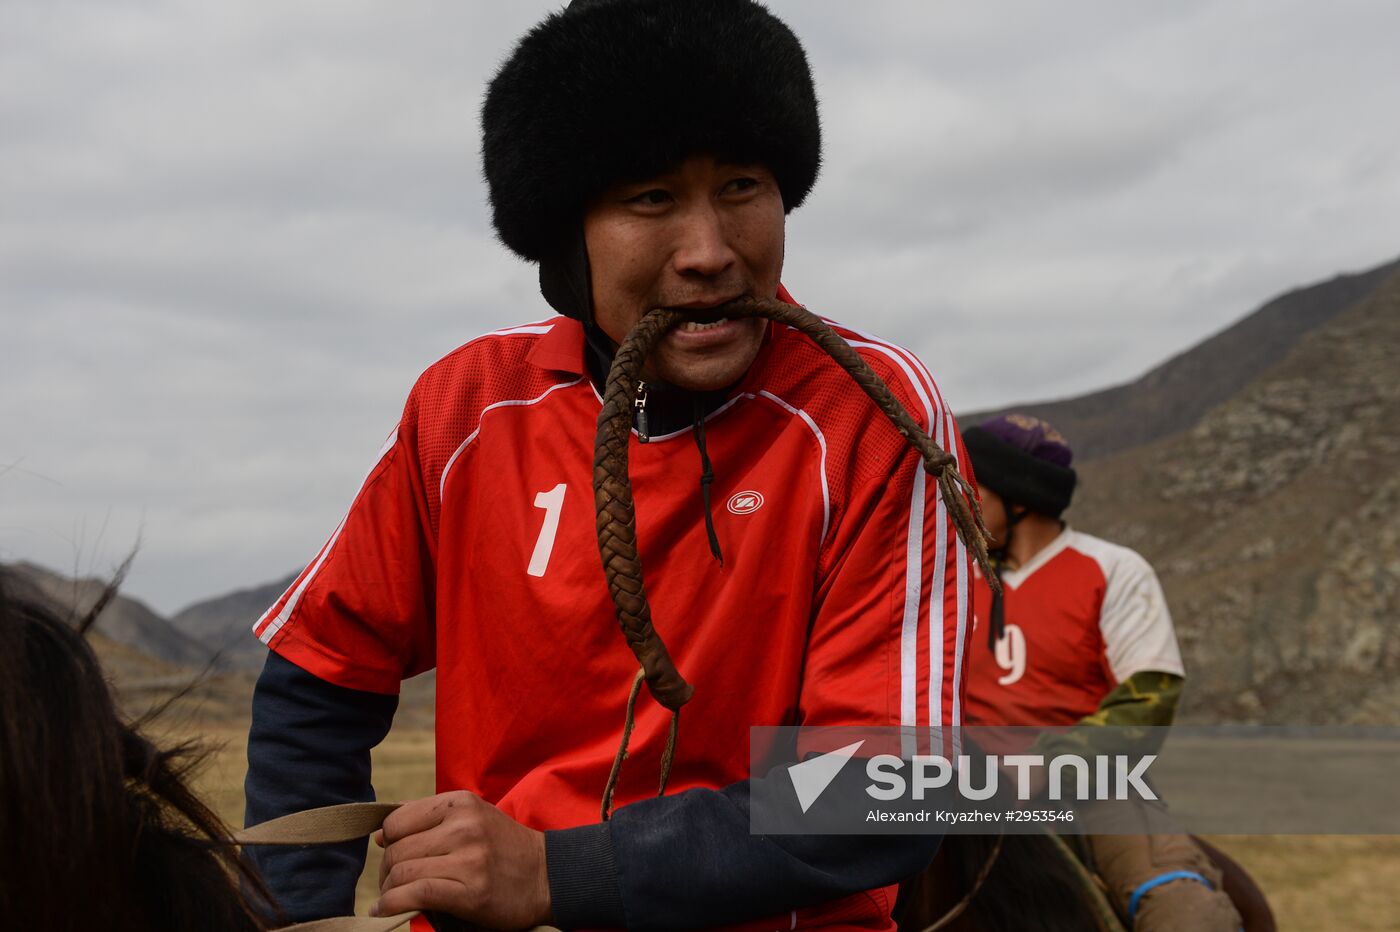 Kok-boru championship in Republic of Altai